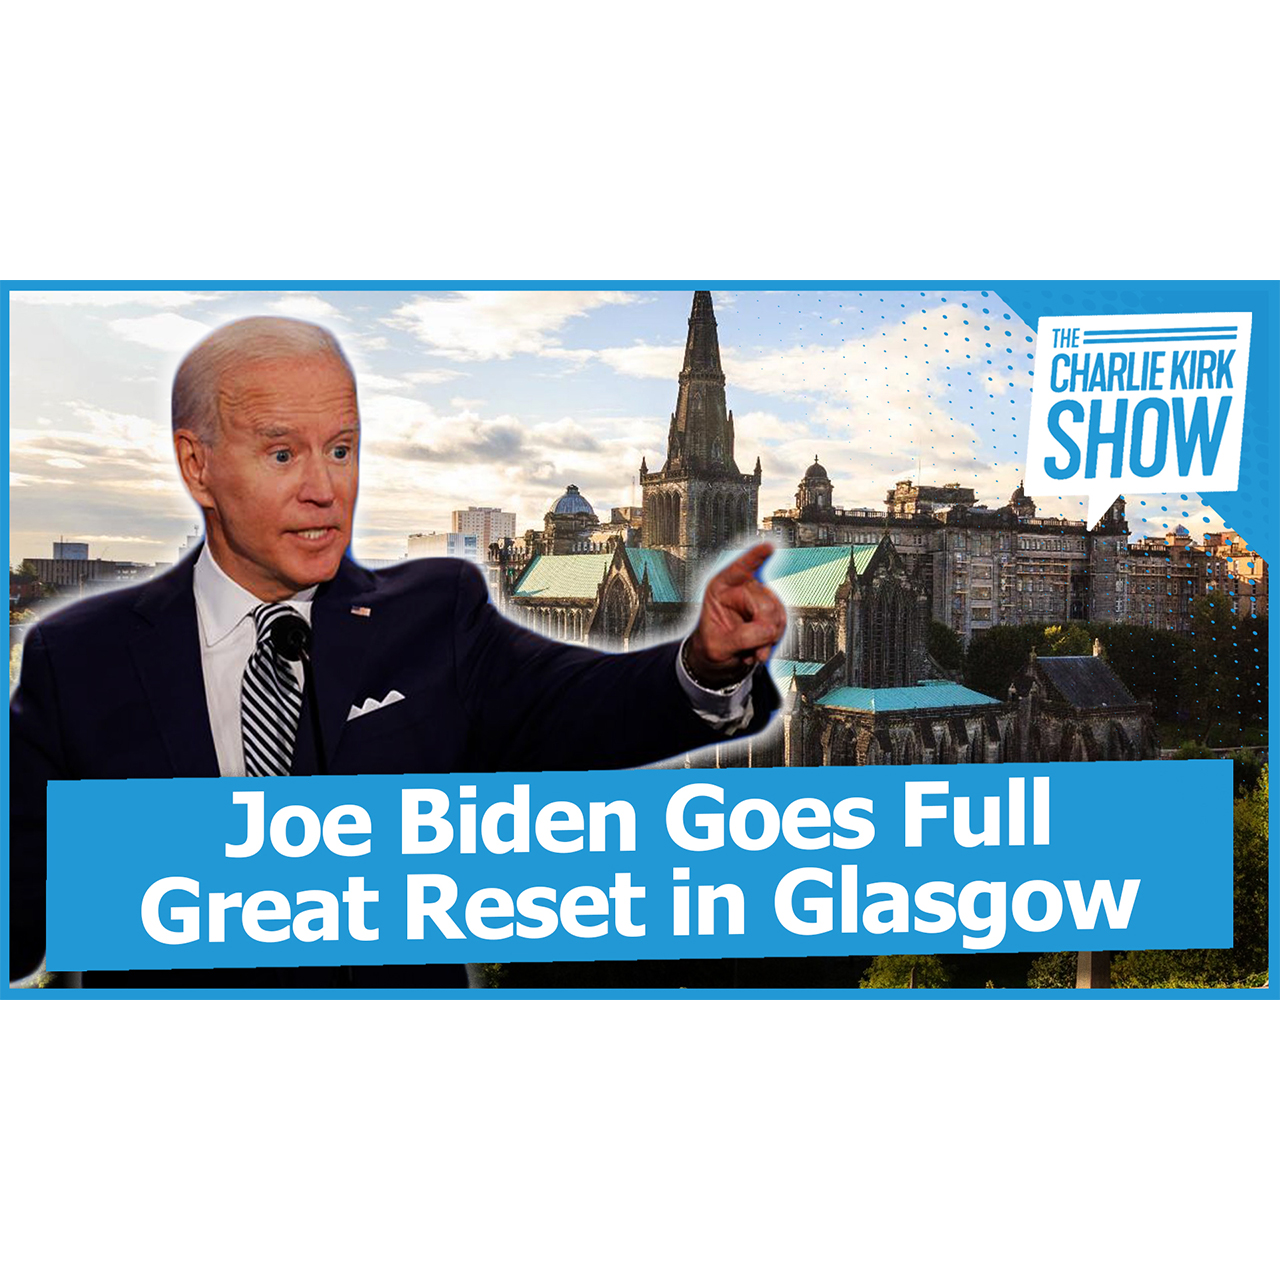 Joe Biden Goes Full Great Reset in Glasgow